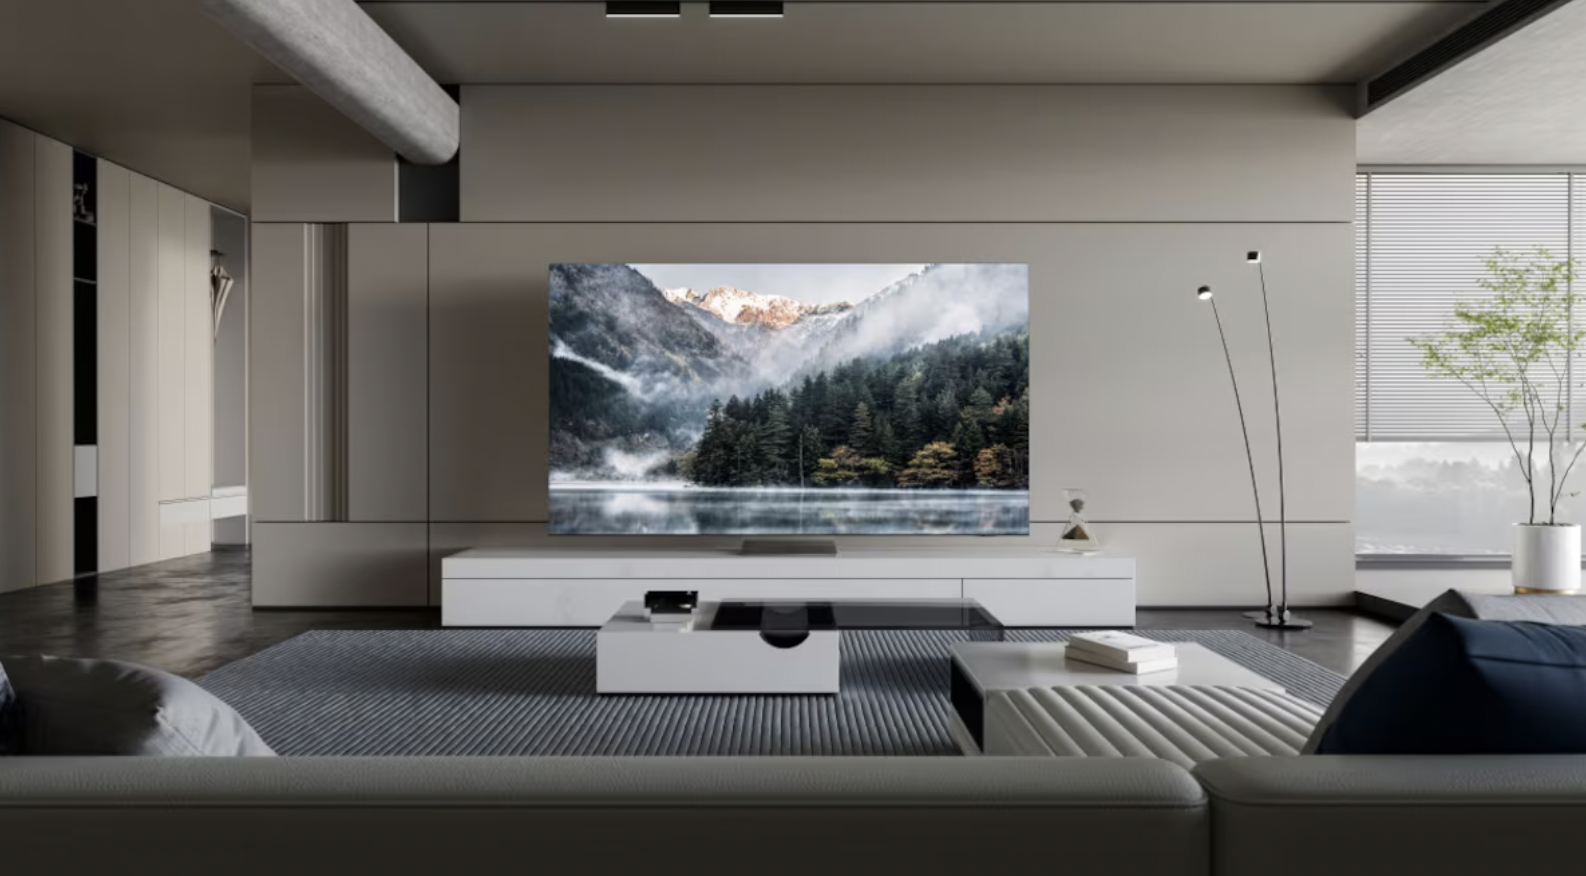 Samsung apresenta a nova era das TVs, com a inteligência artificial no centro da experiência